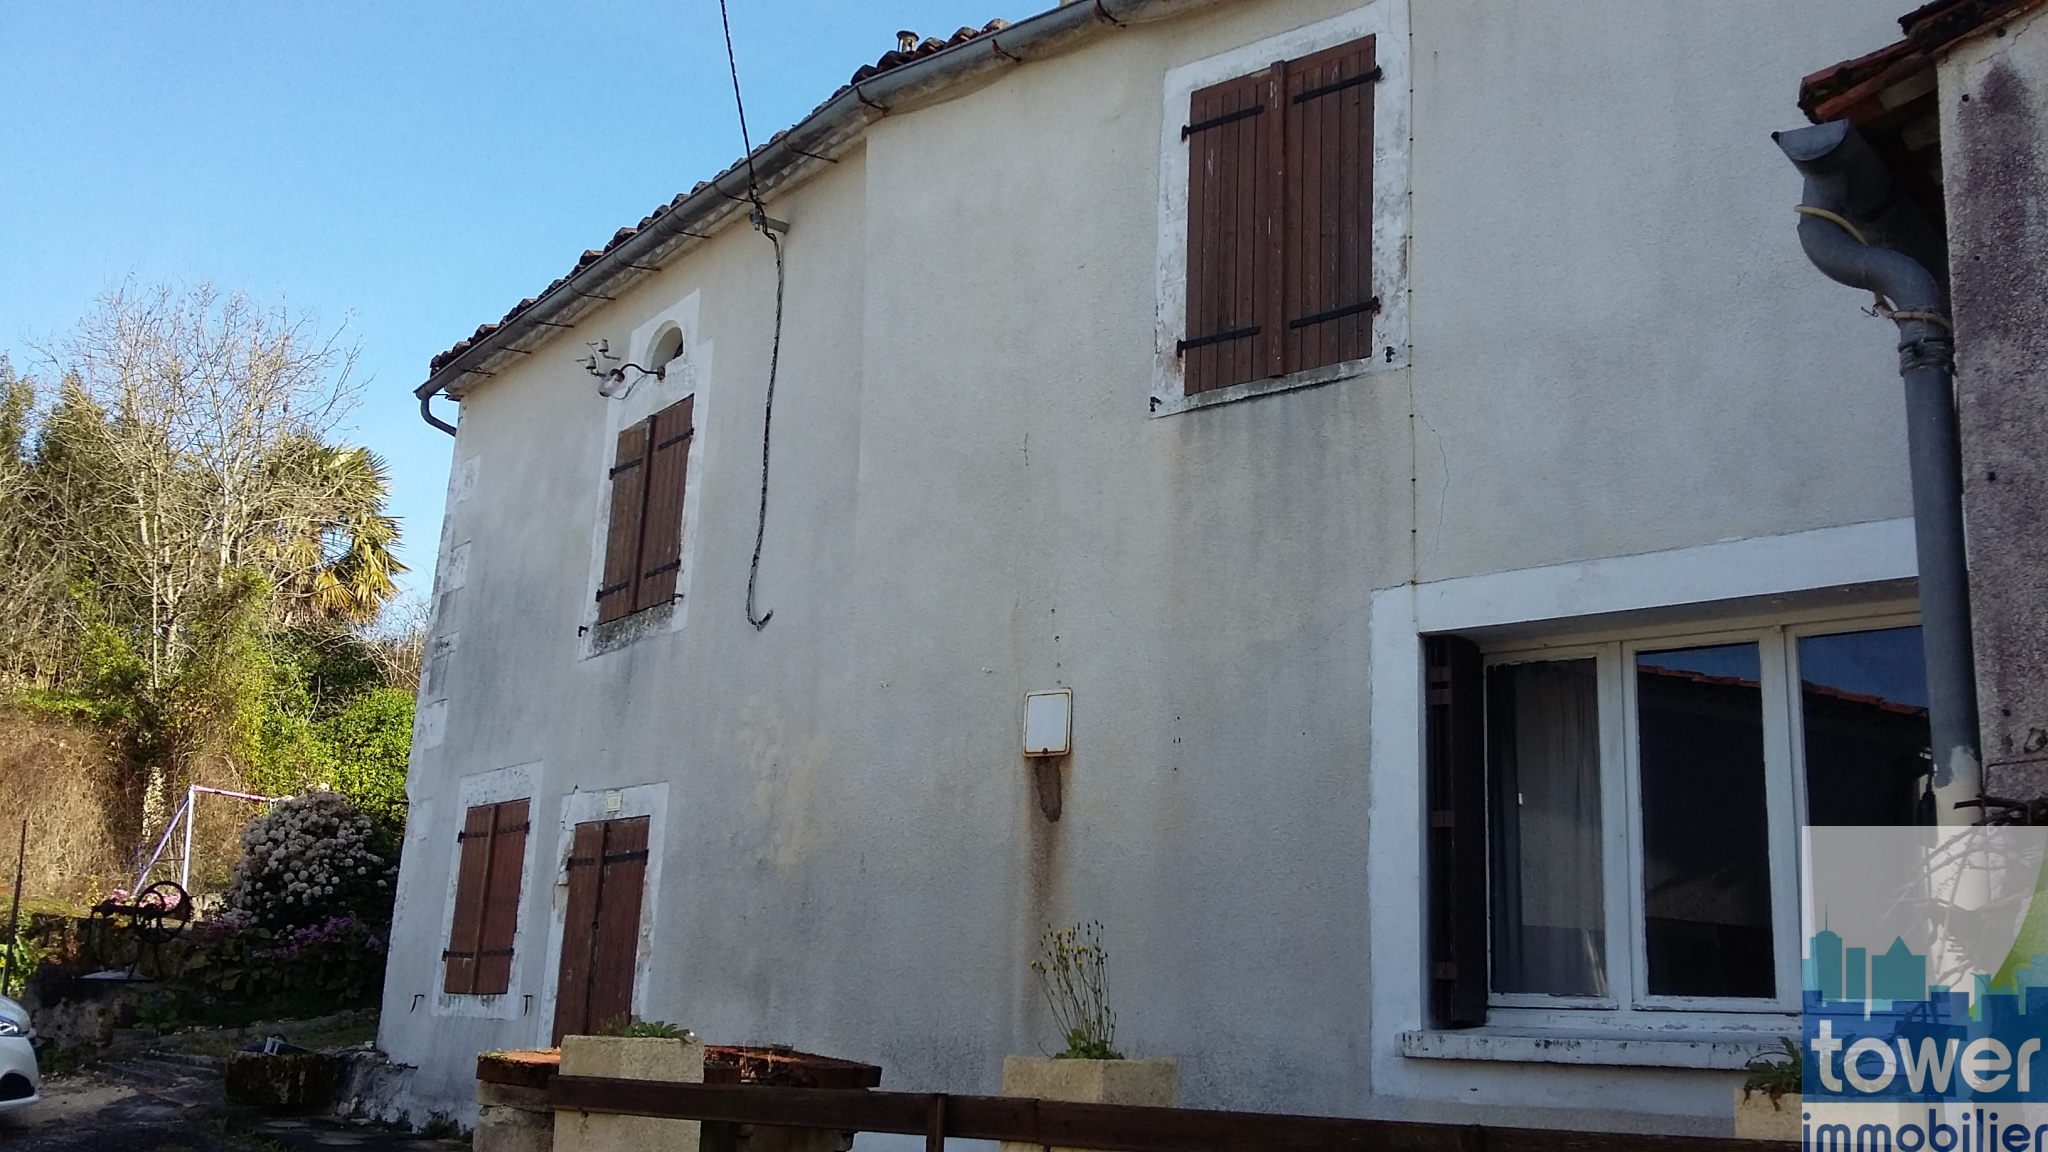 Maison à rénover près de Sers en Charente